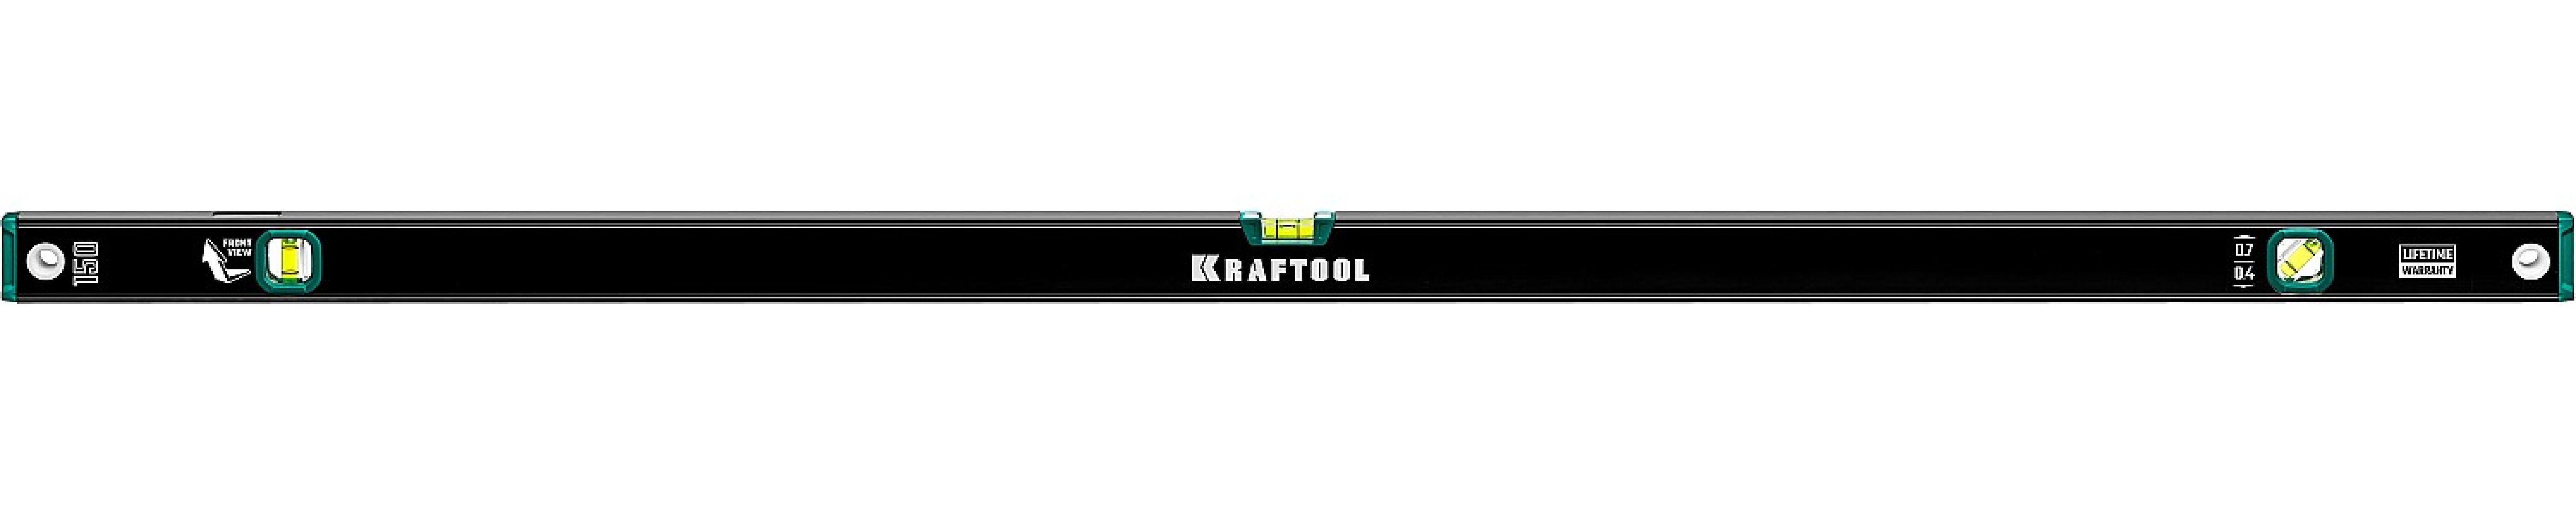  KRAFTOOL    1500  (34781-150)